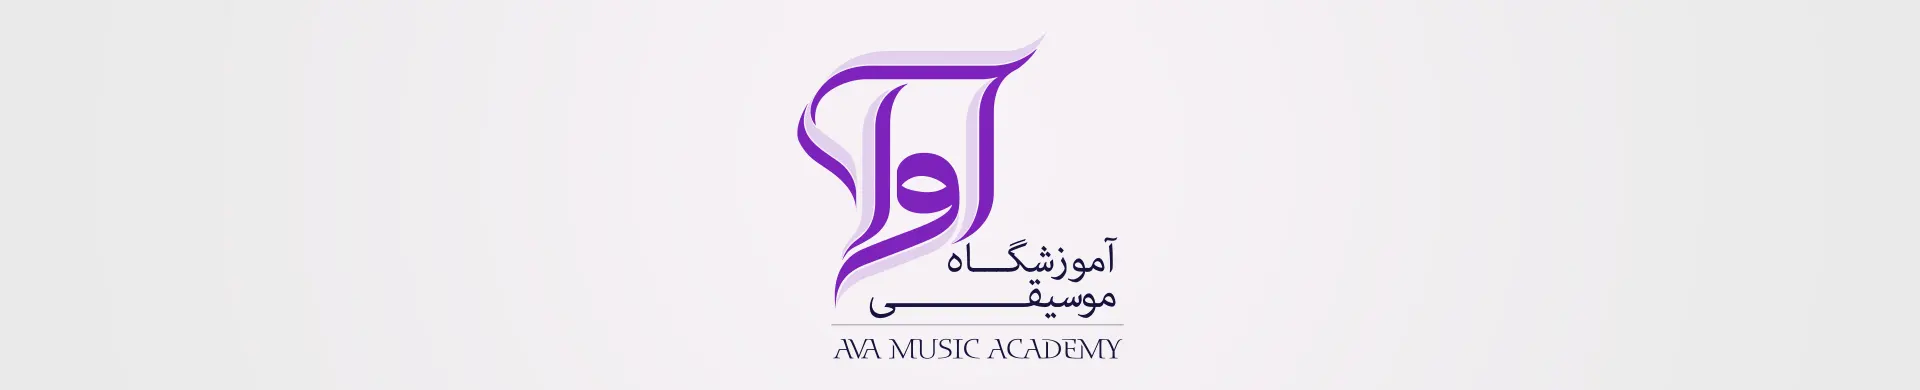 آوازهای ایرانی